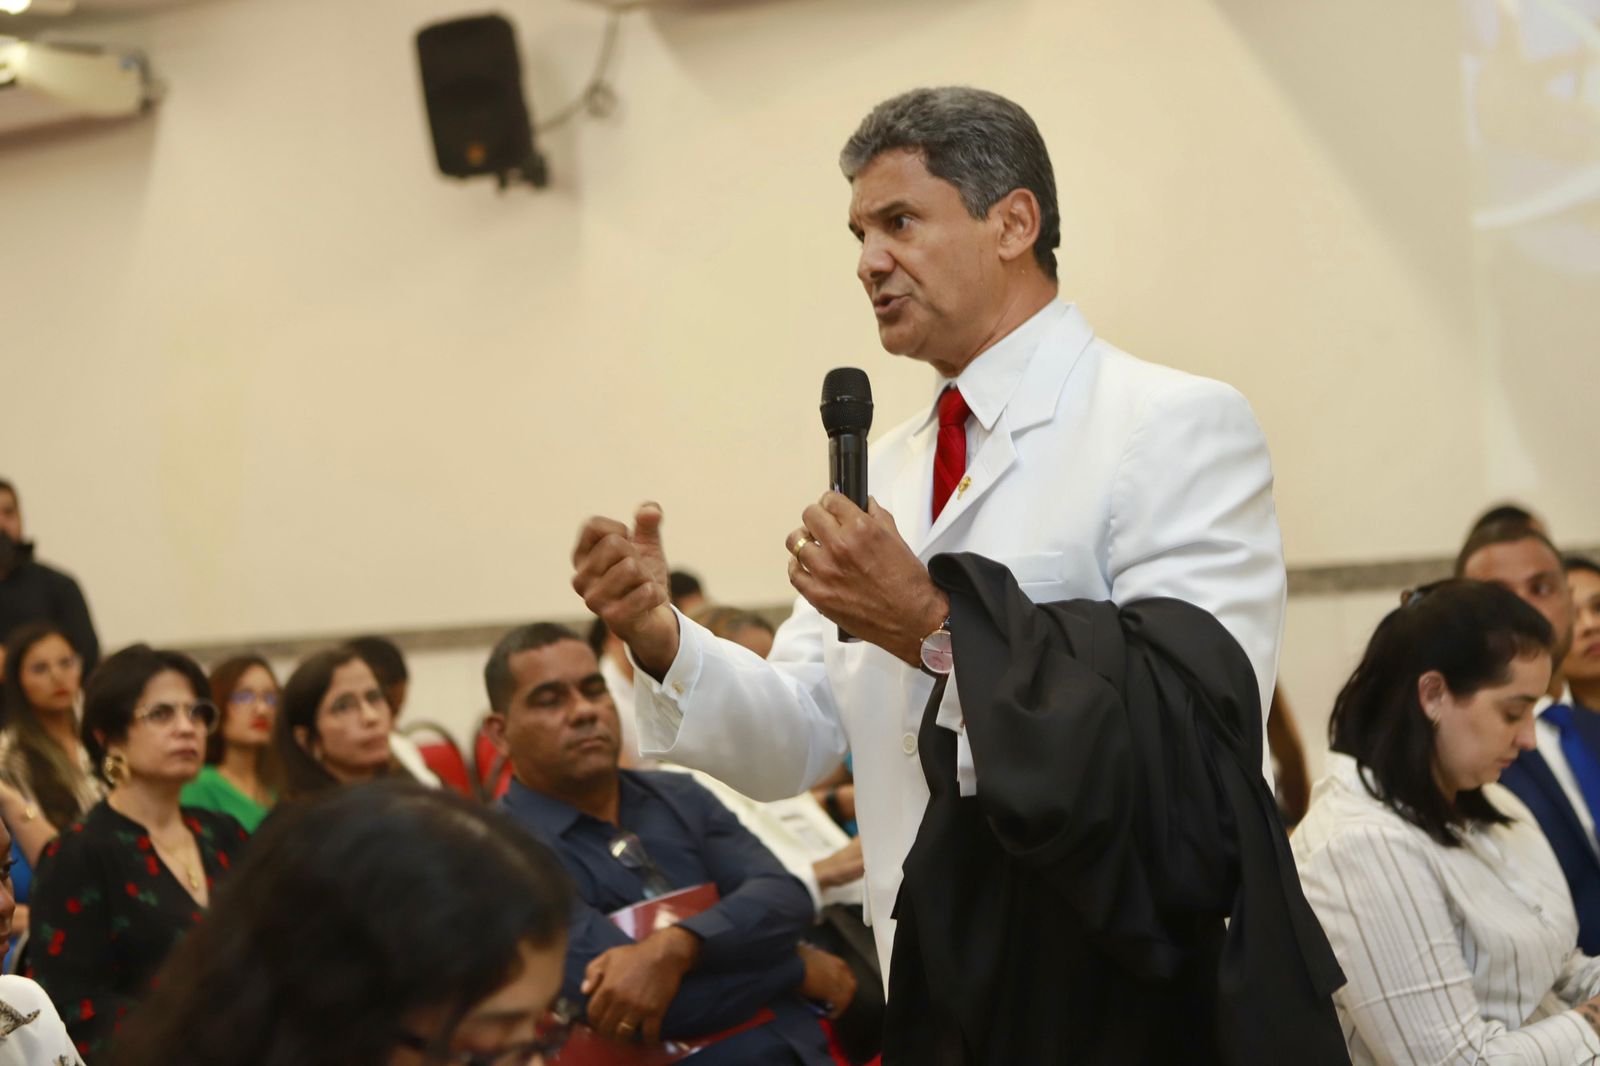 Vivaldo Amaral ministra palestra sobre “A Plenitude de Defesa no Tribunal do Júri” em Feira de Santana